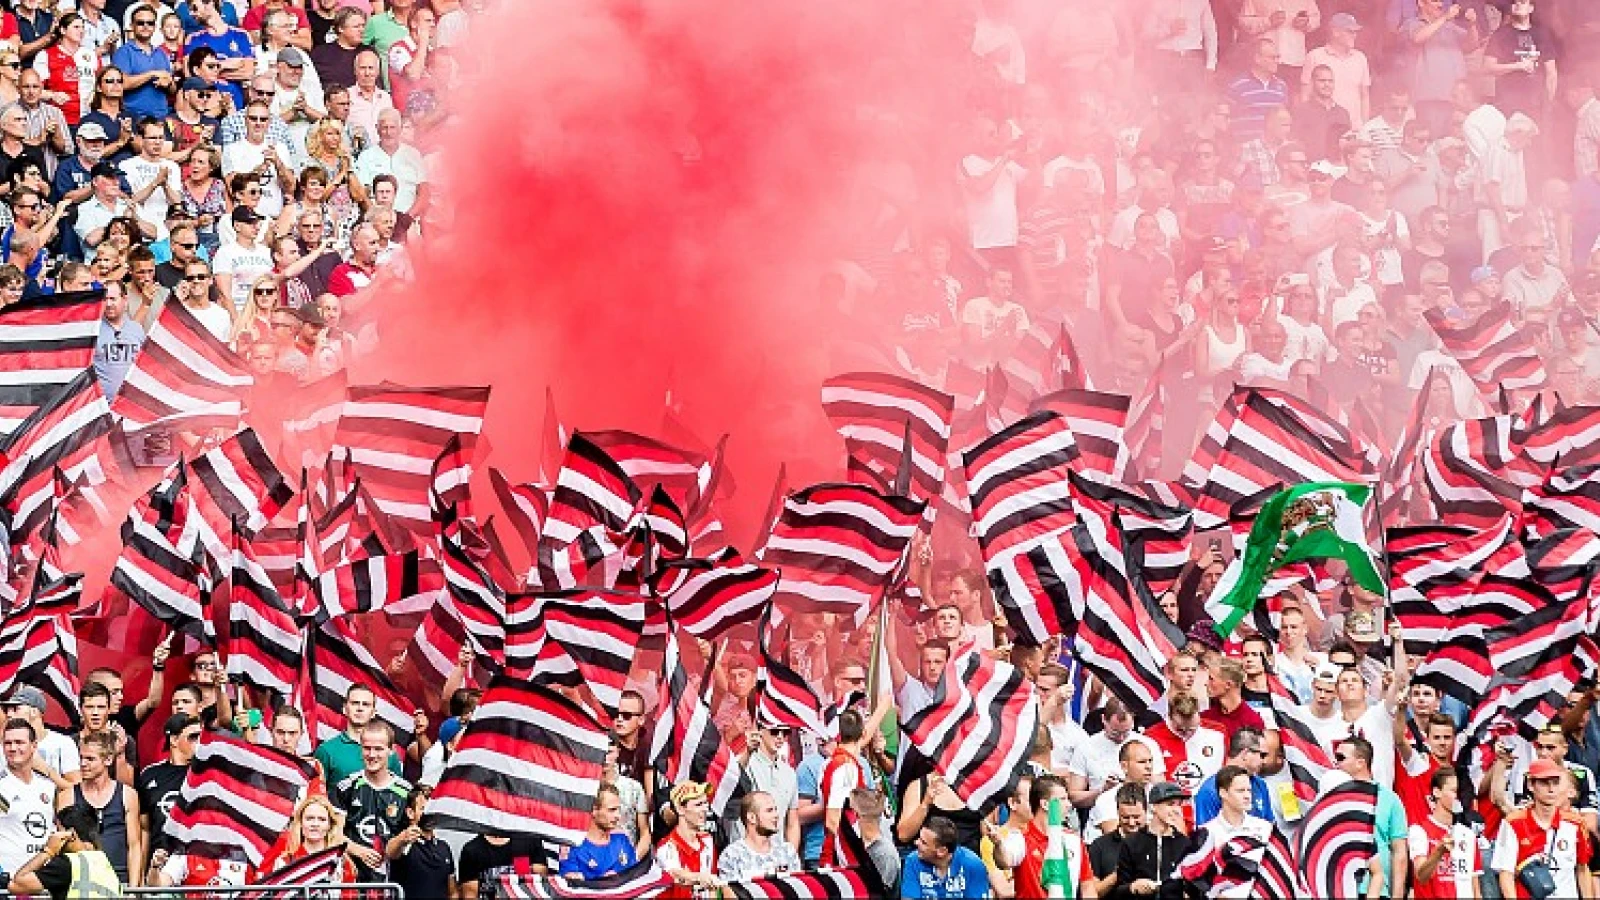 LAATSTE KANS | Voorspel de uitslag! Maak kans op een Feyenoord-shirt